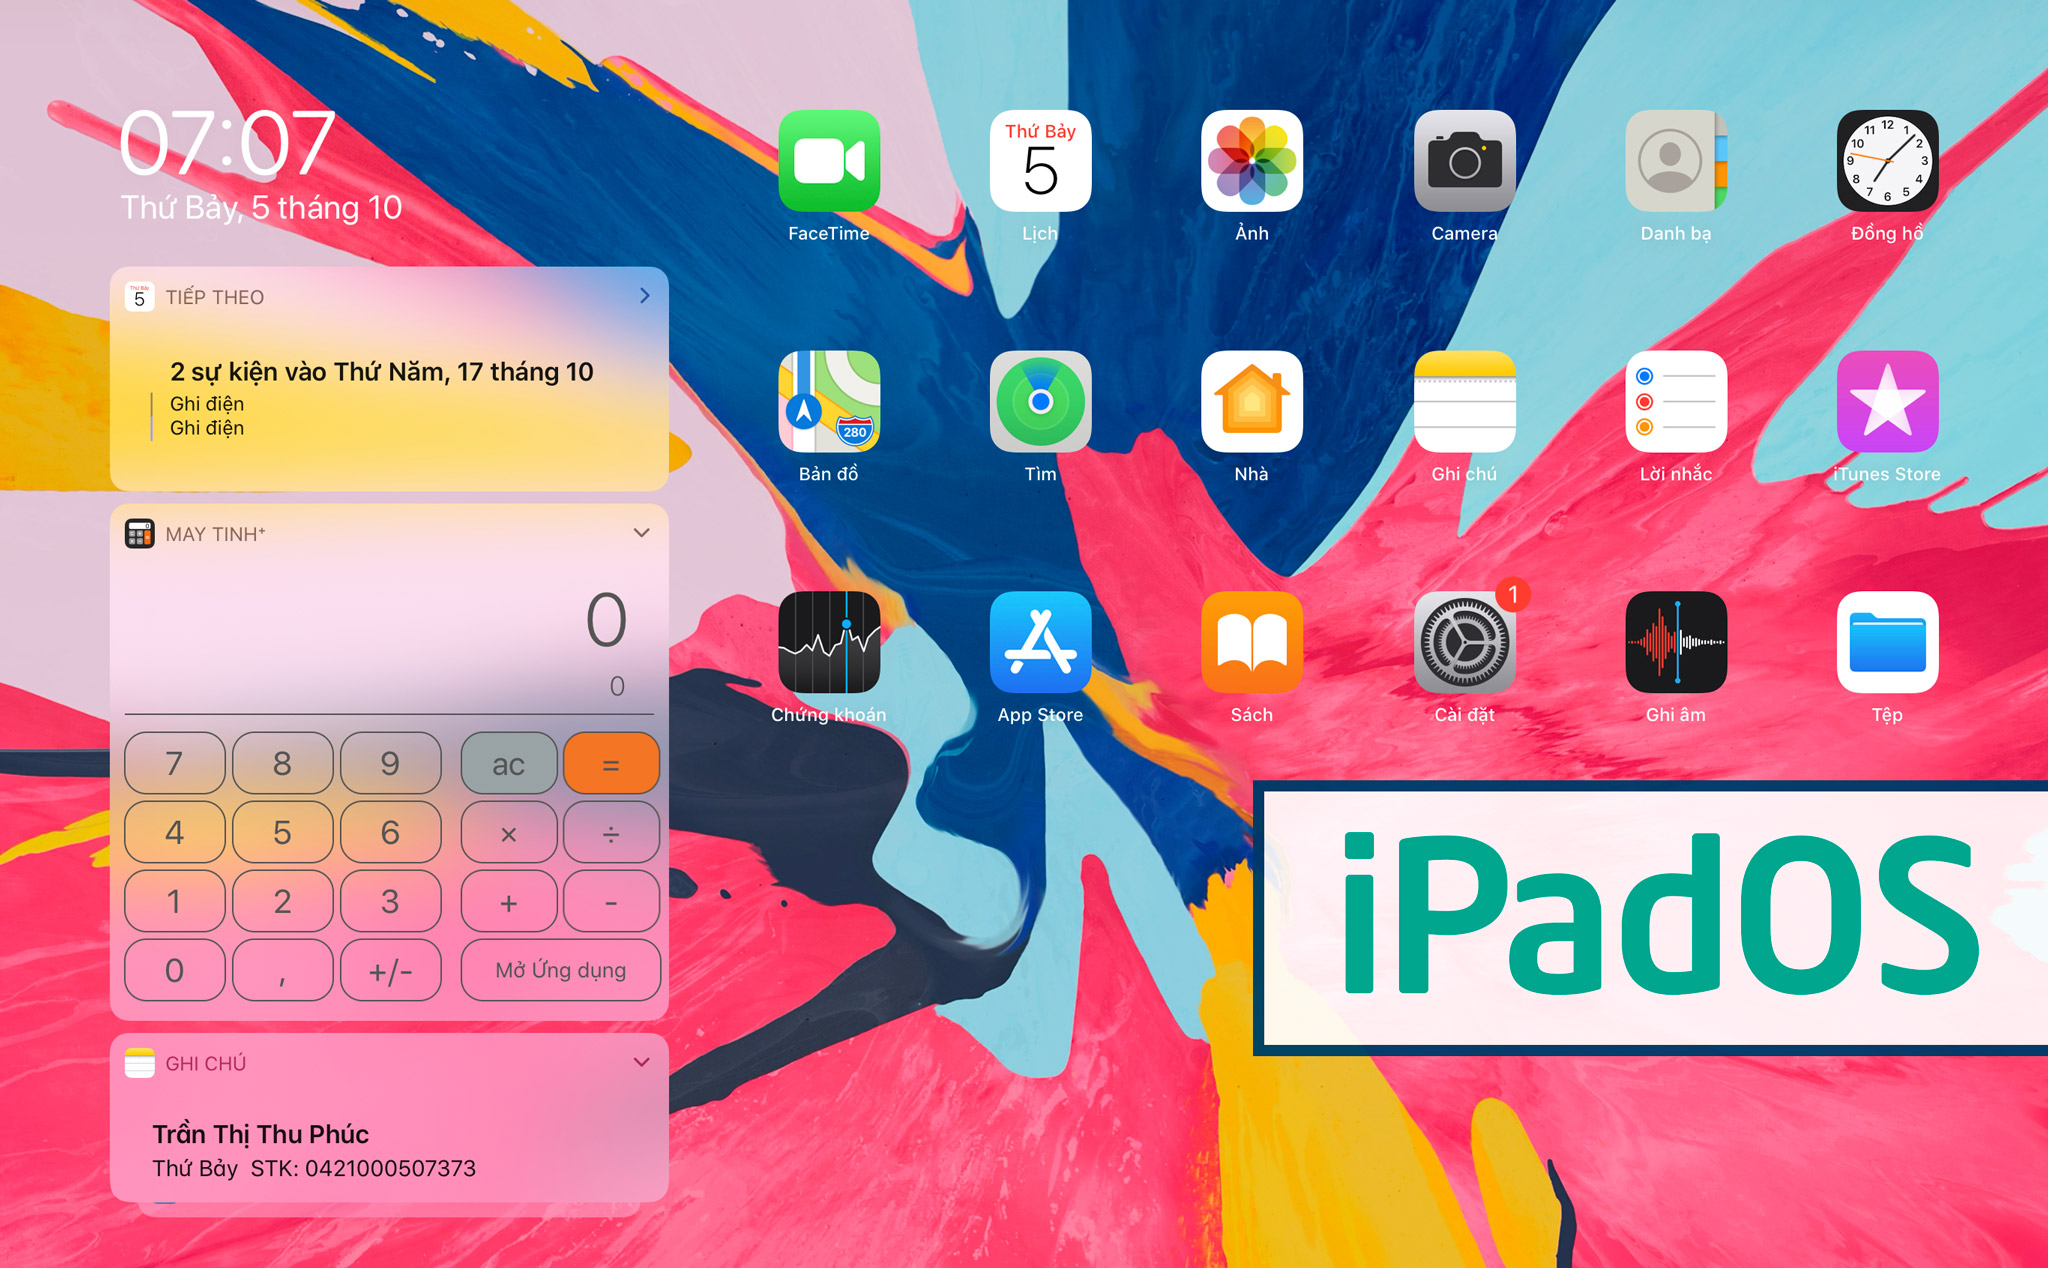 Những tính năng hay nhất của iPadOS mà iOS không có